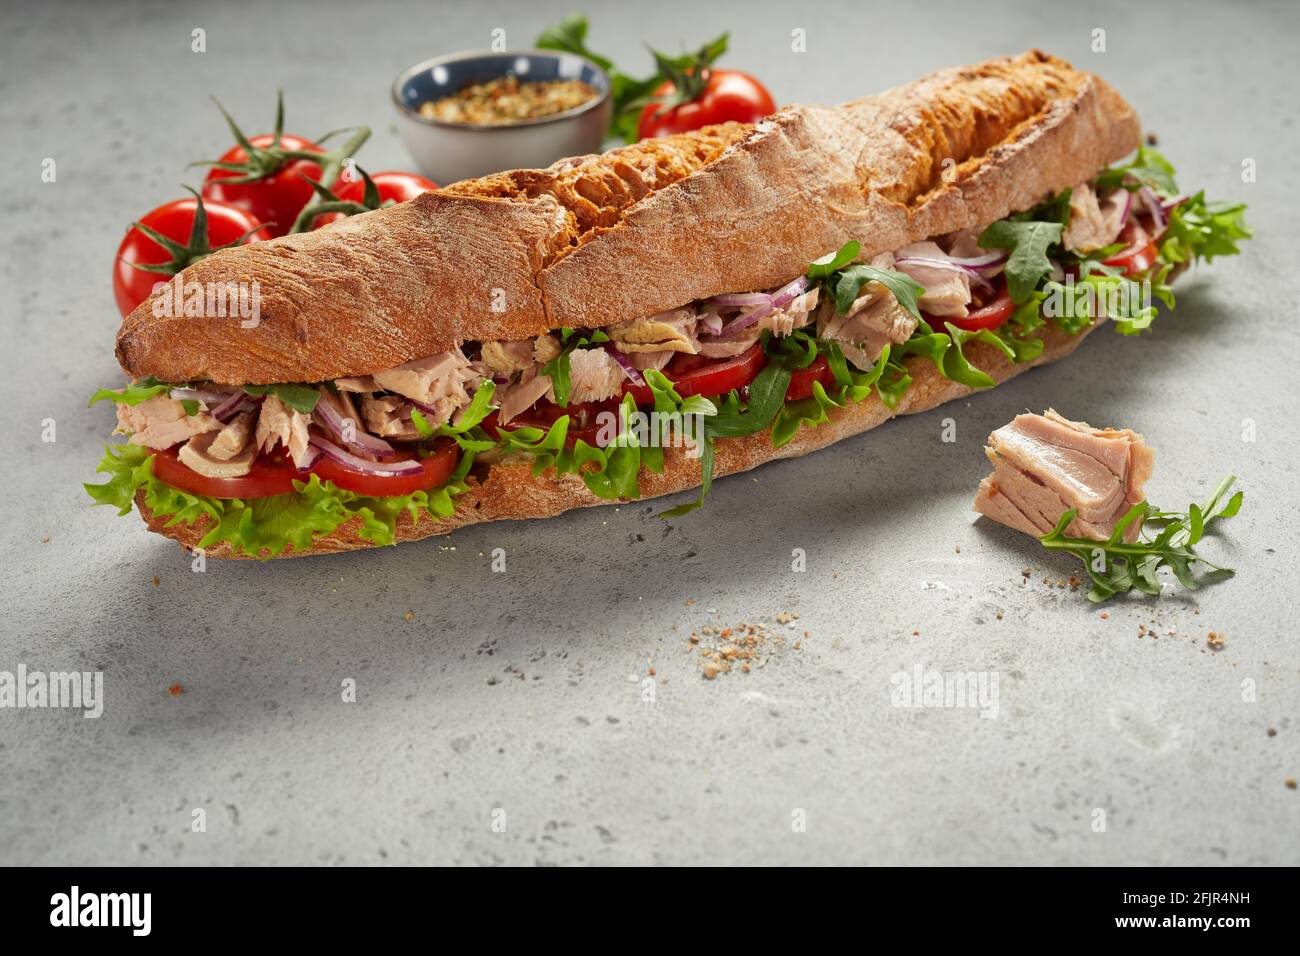 Leckere frische Sub-Sandwich mit Fleisch und verschiedenen Gemüse platziert  Fast reife Tomaten und Gewürze auf grauem Tisch Stockfotografie - Alamy